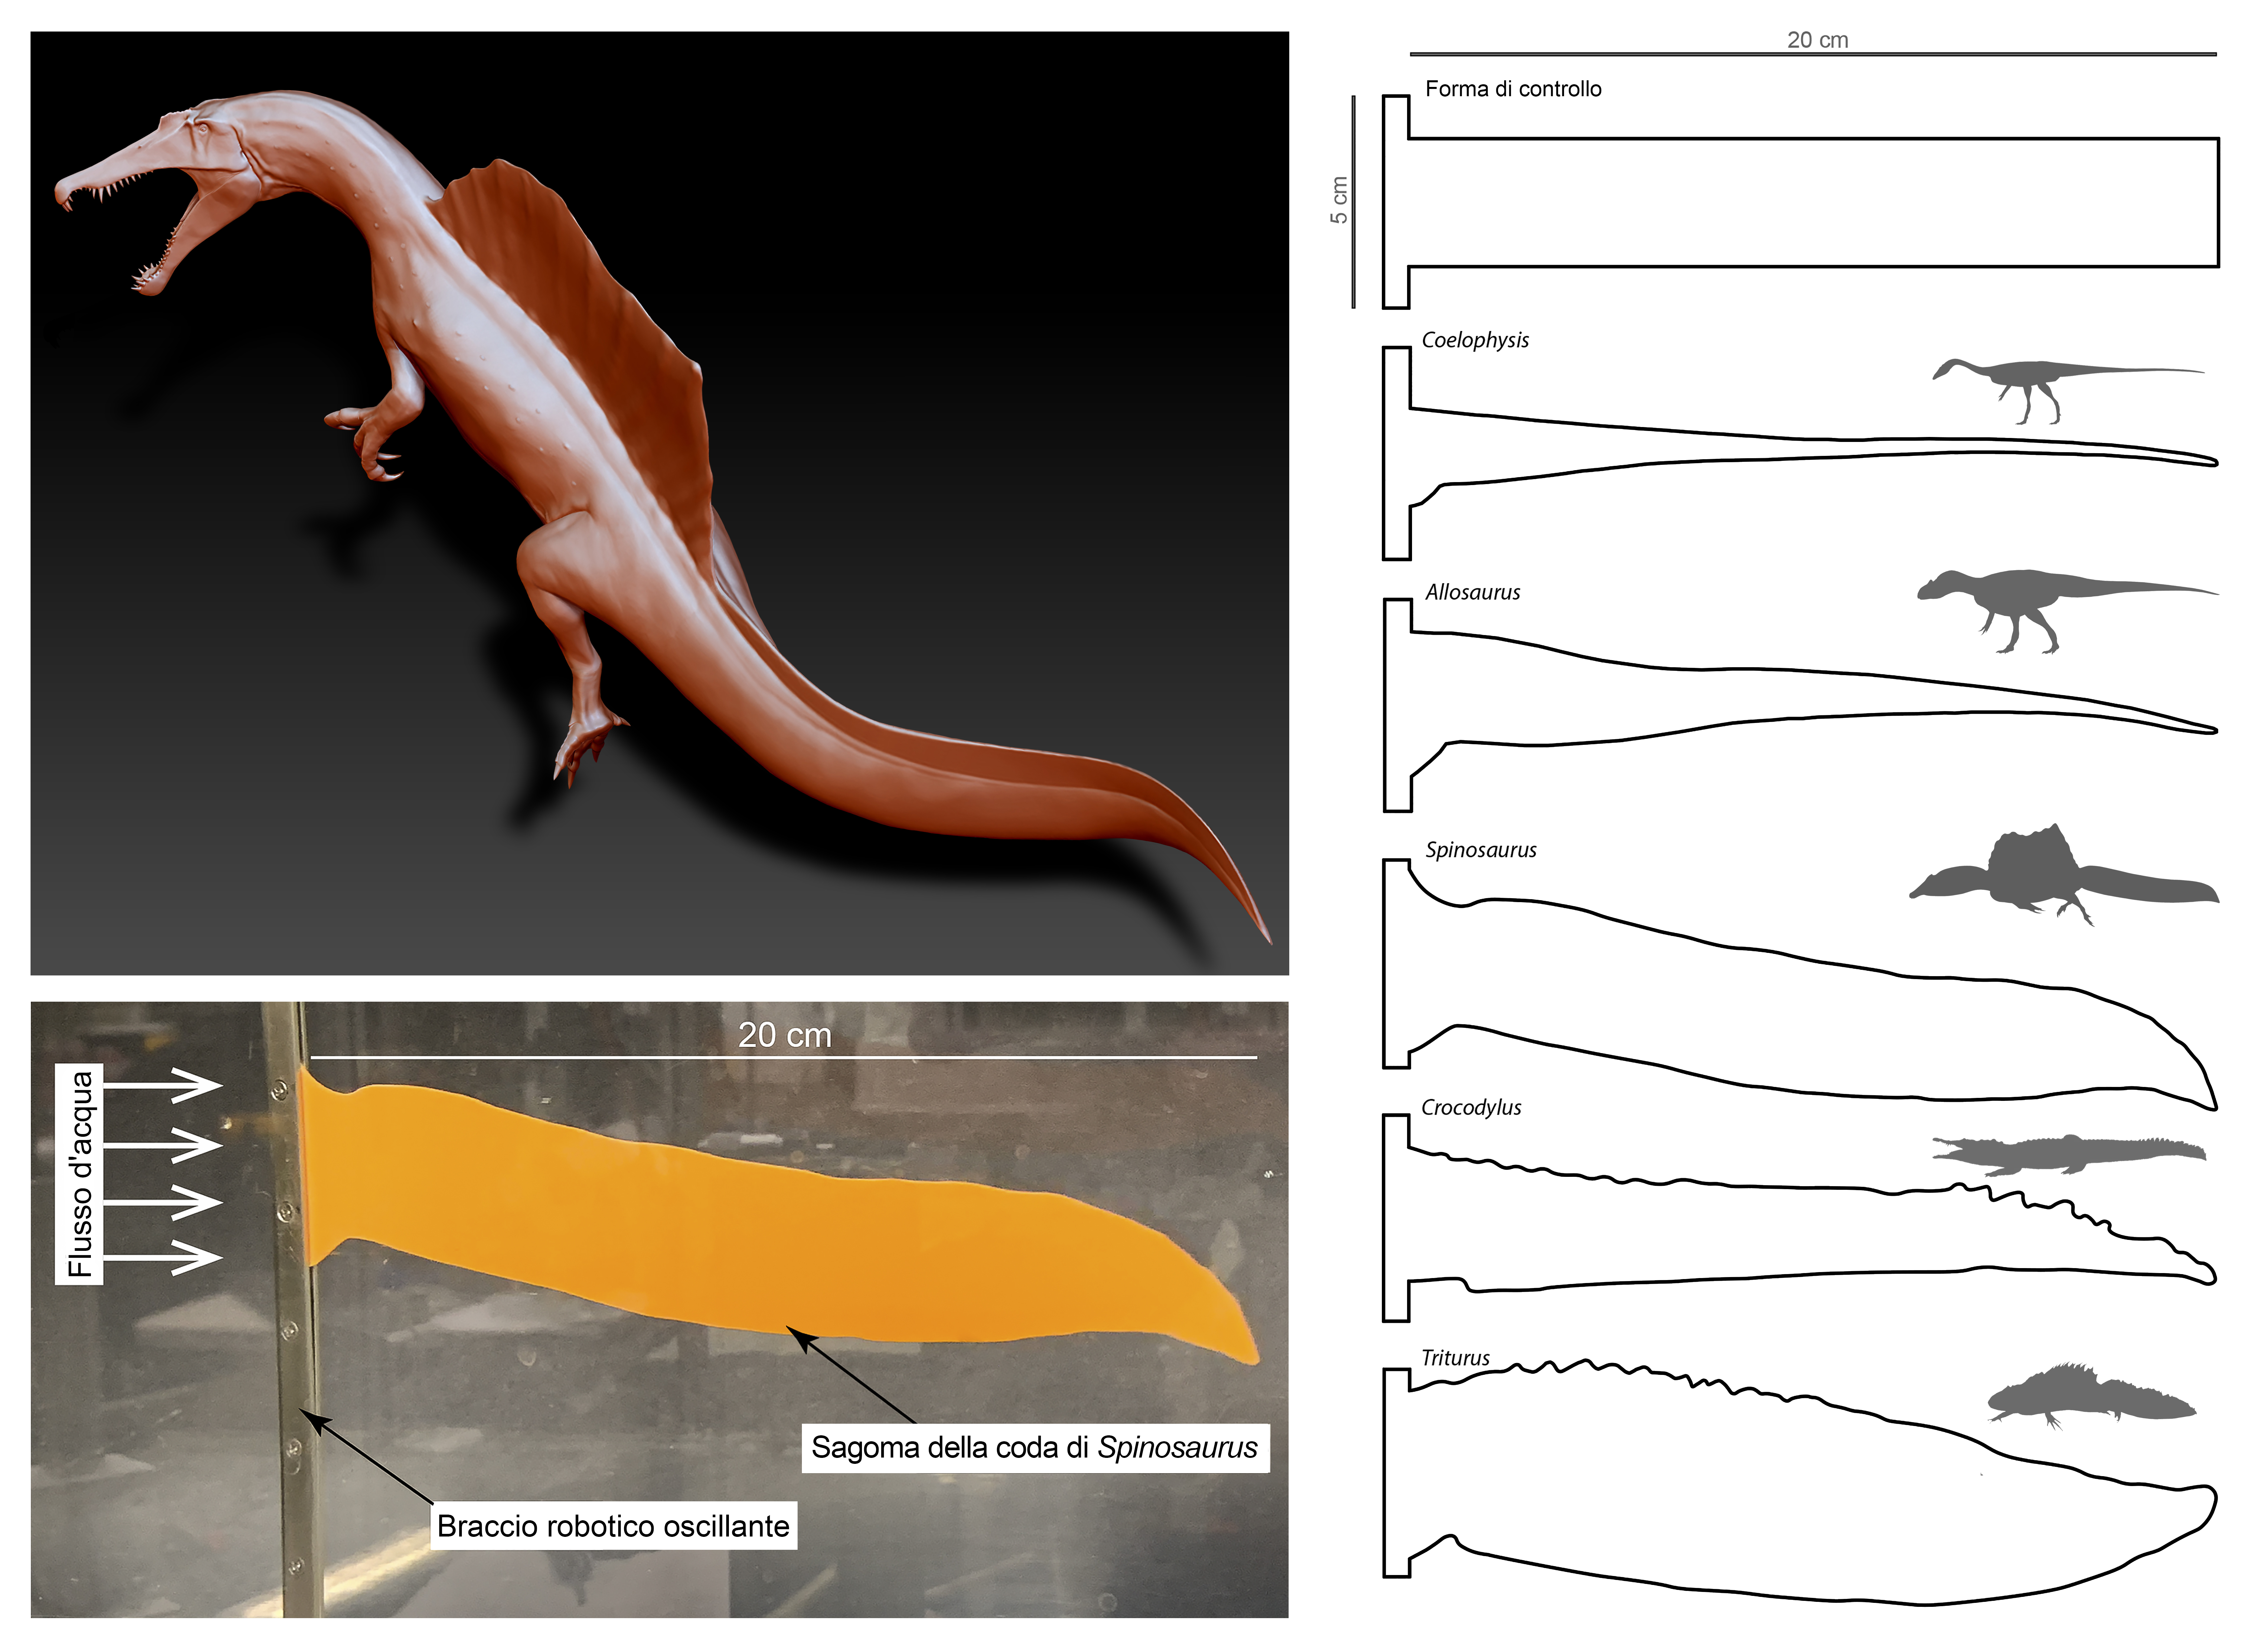 Il nuovo look di Spinosaurus e i test sulla efficienza propulsiva di una sagoma della coda, immersa in un flusso d’acqua. A destra: prove fatte con code di altre specie. (Davide Bonadonna, Stephanie Pierce)